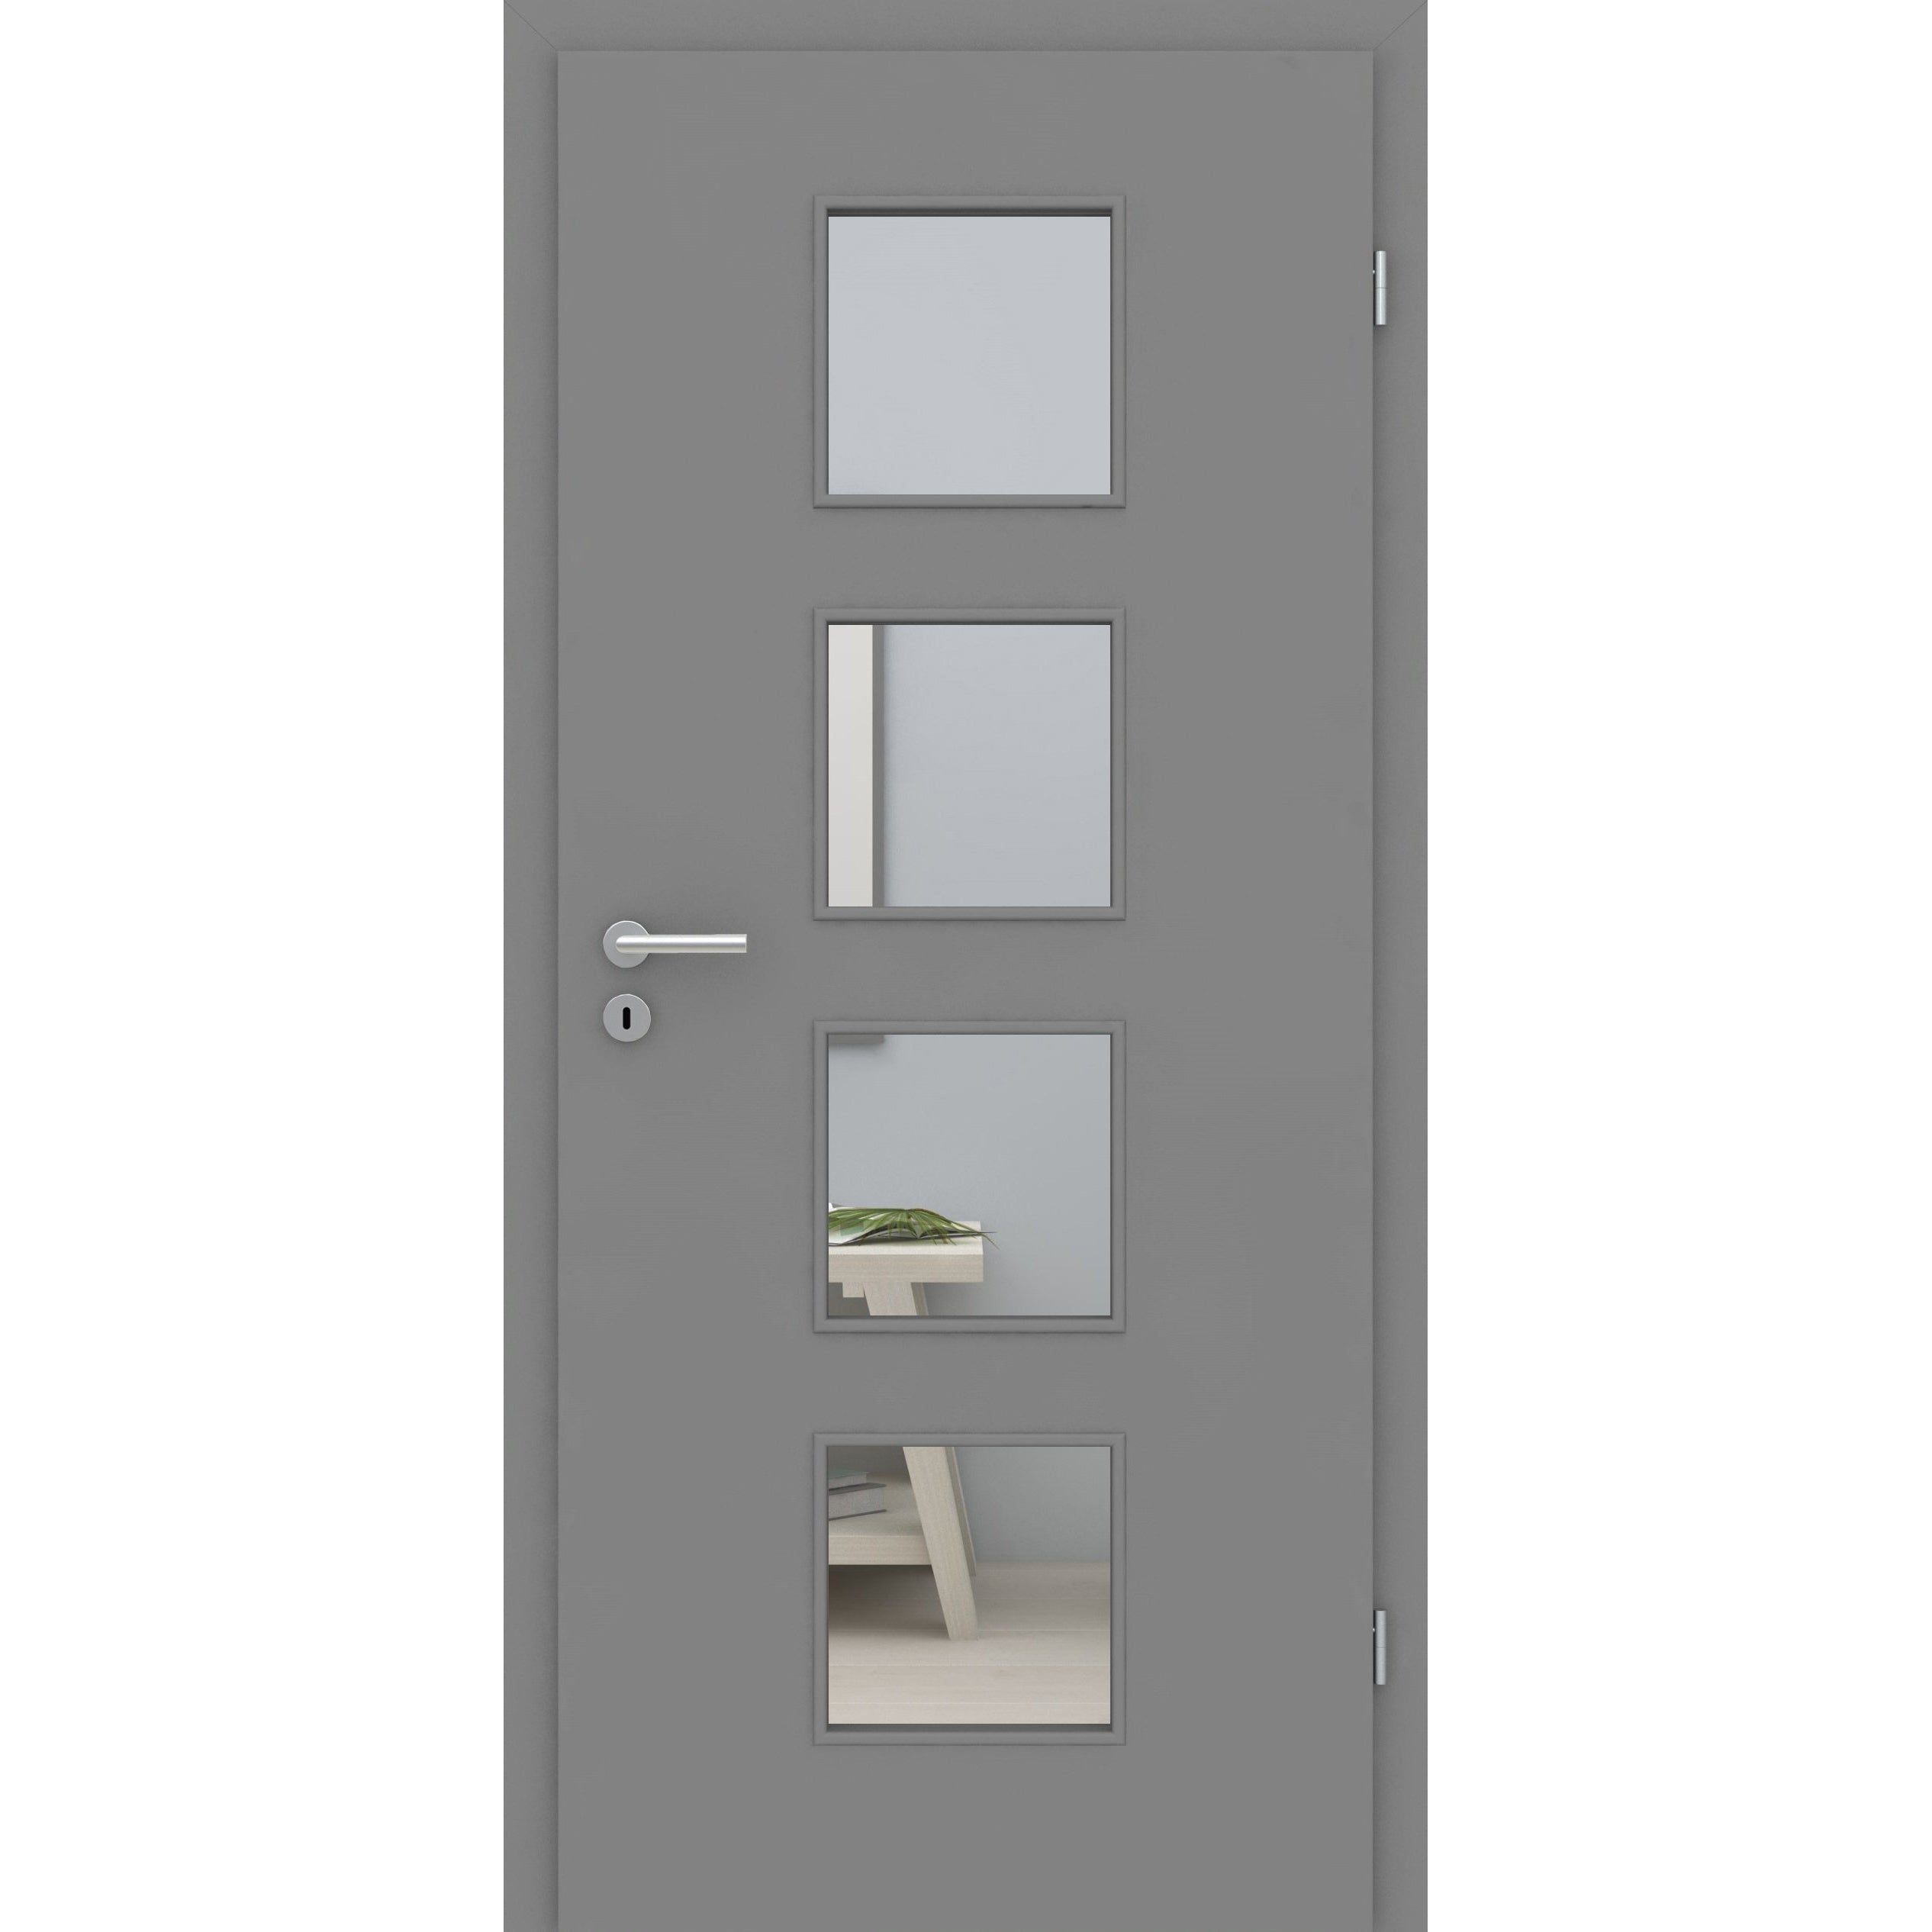 Zimmertür mit Zarge und Lichtausschnitt grau glatt Designkante - Modell LA4